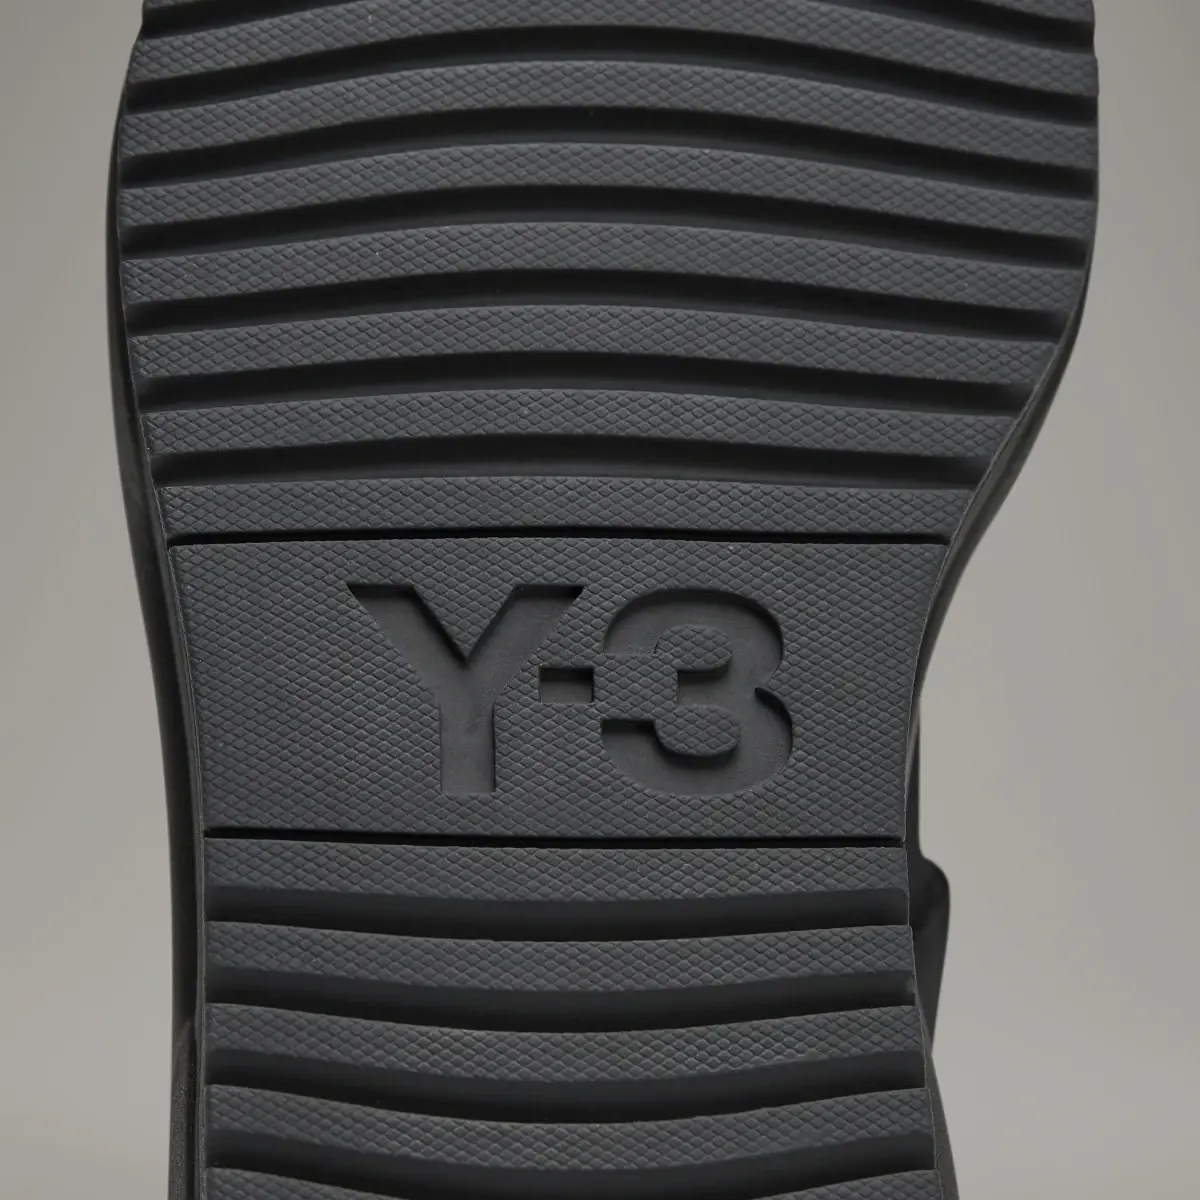 Adidas Y-3 Rivalry Sandals. 3